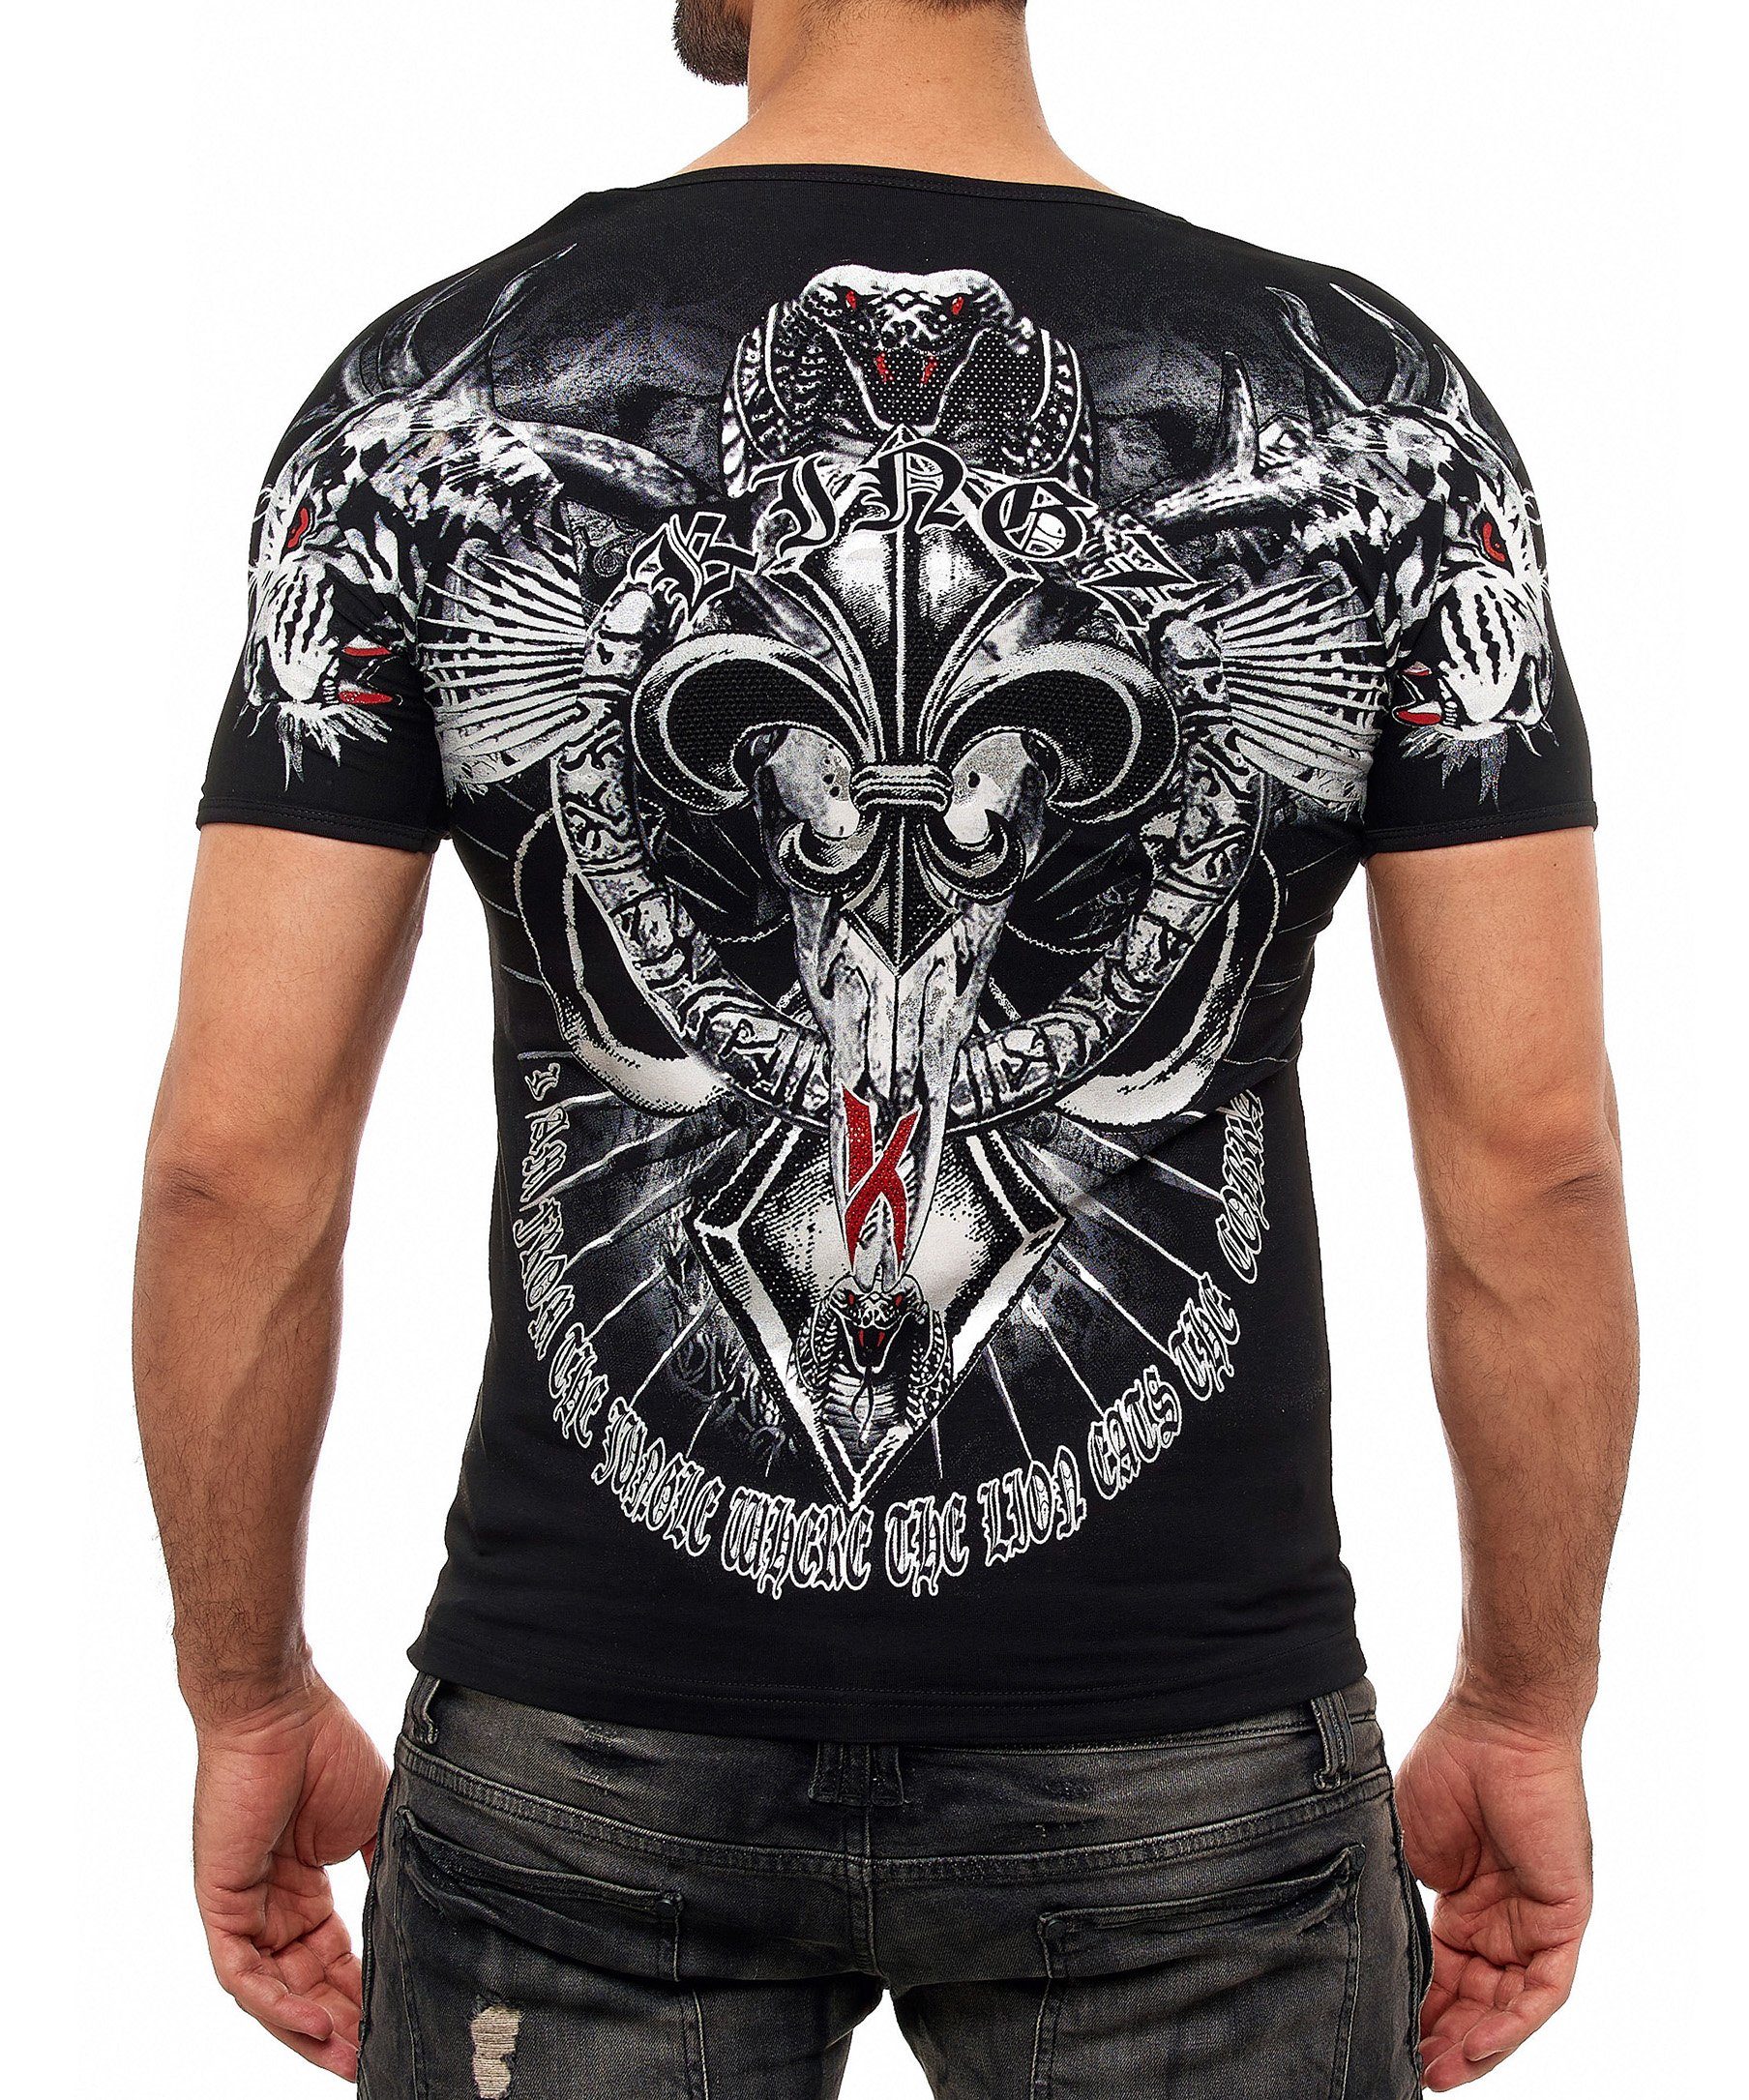 Cobra-Lilien-Print KINGZ mit ausgefallenem schwarz-silberfarben T-Shirt